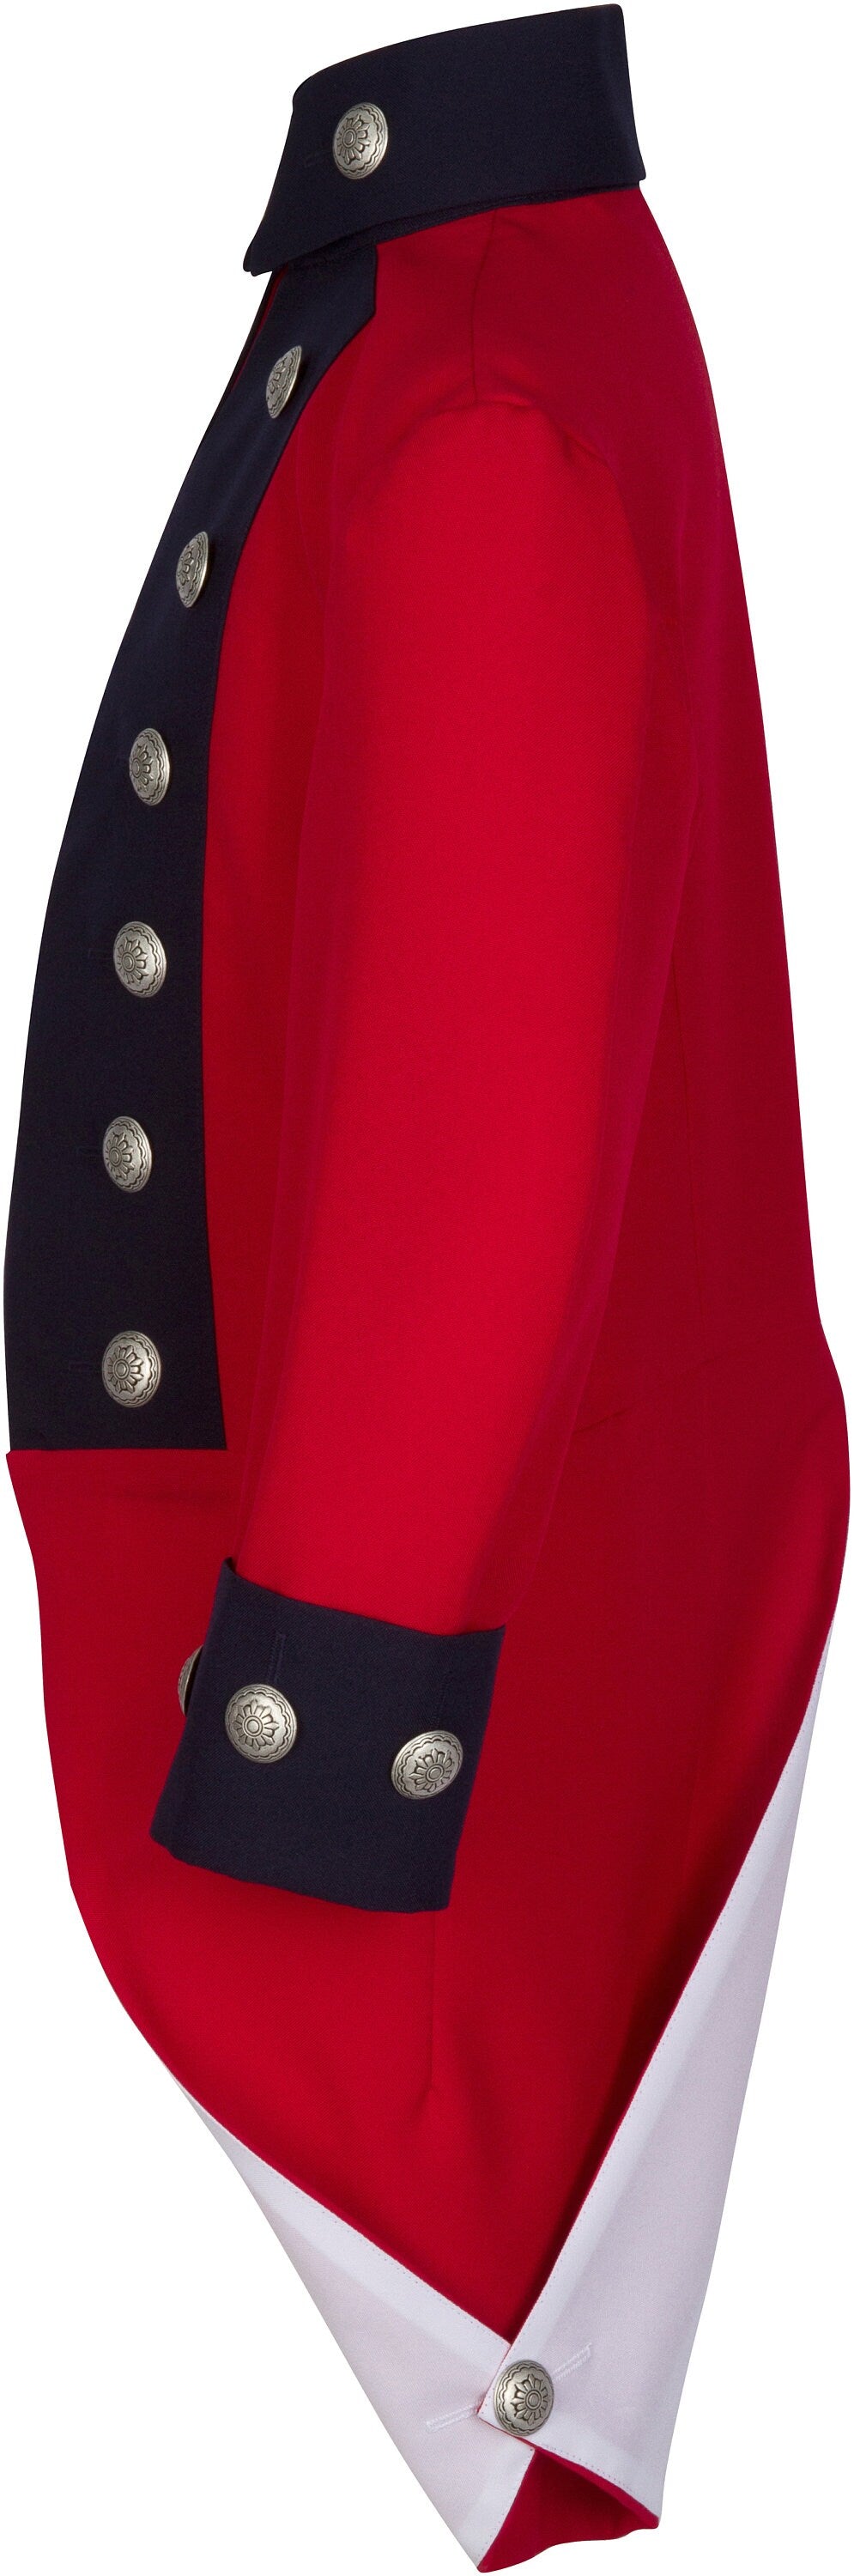 American Revolutionary War British Red Coat Officer's Jacket